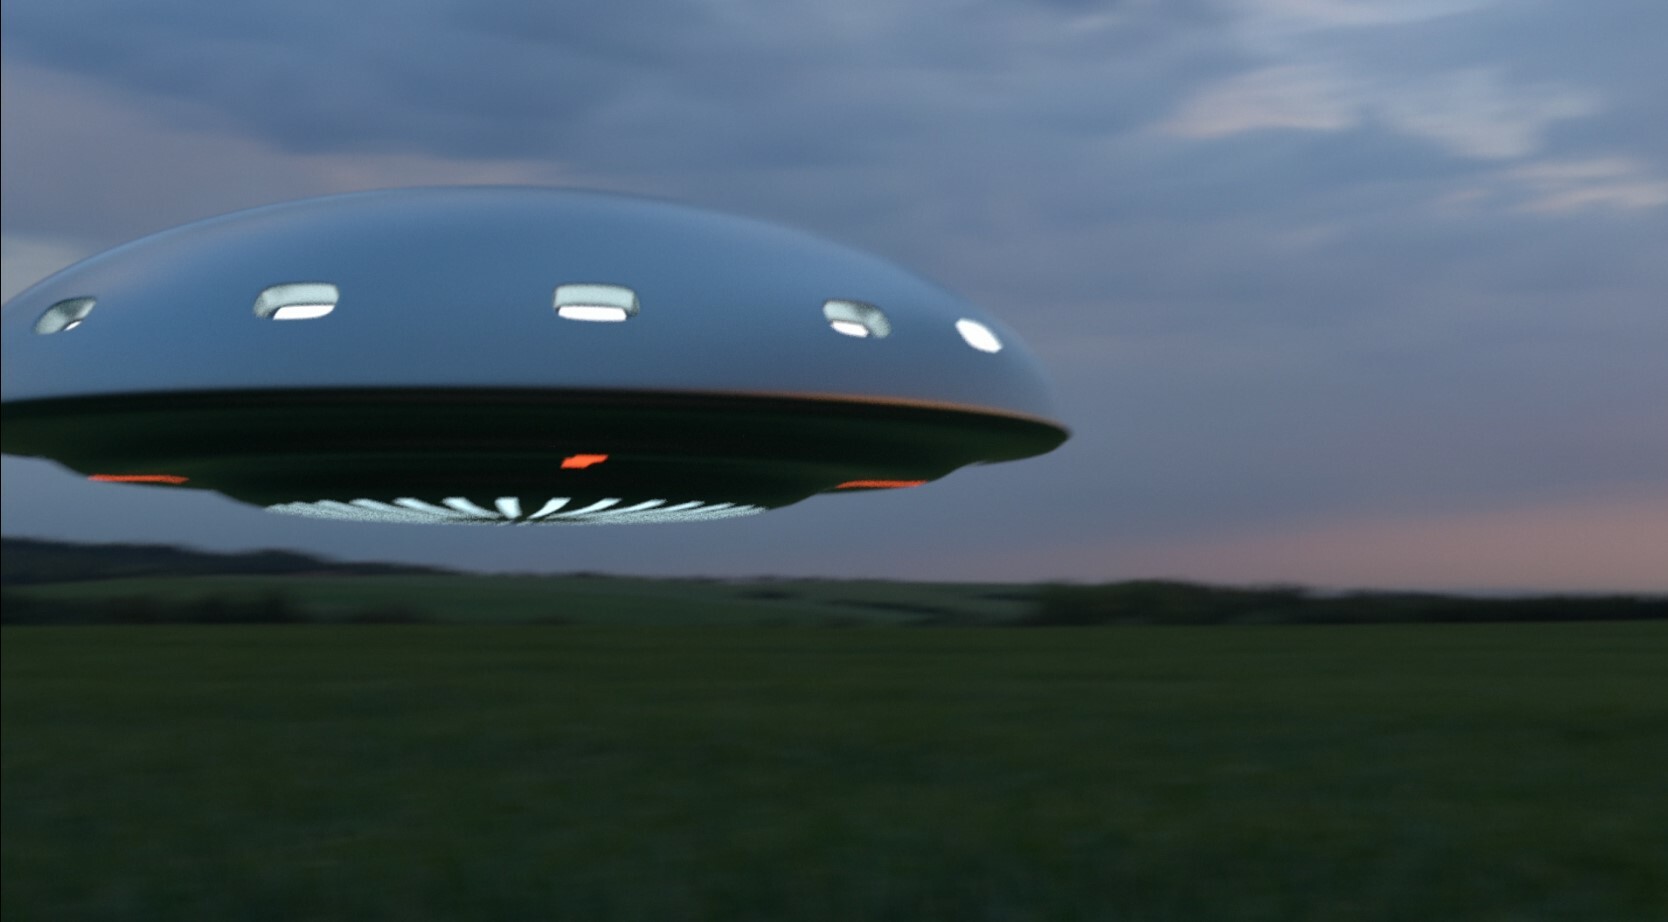 ufo animation